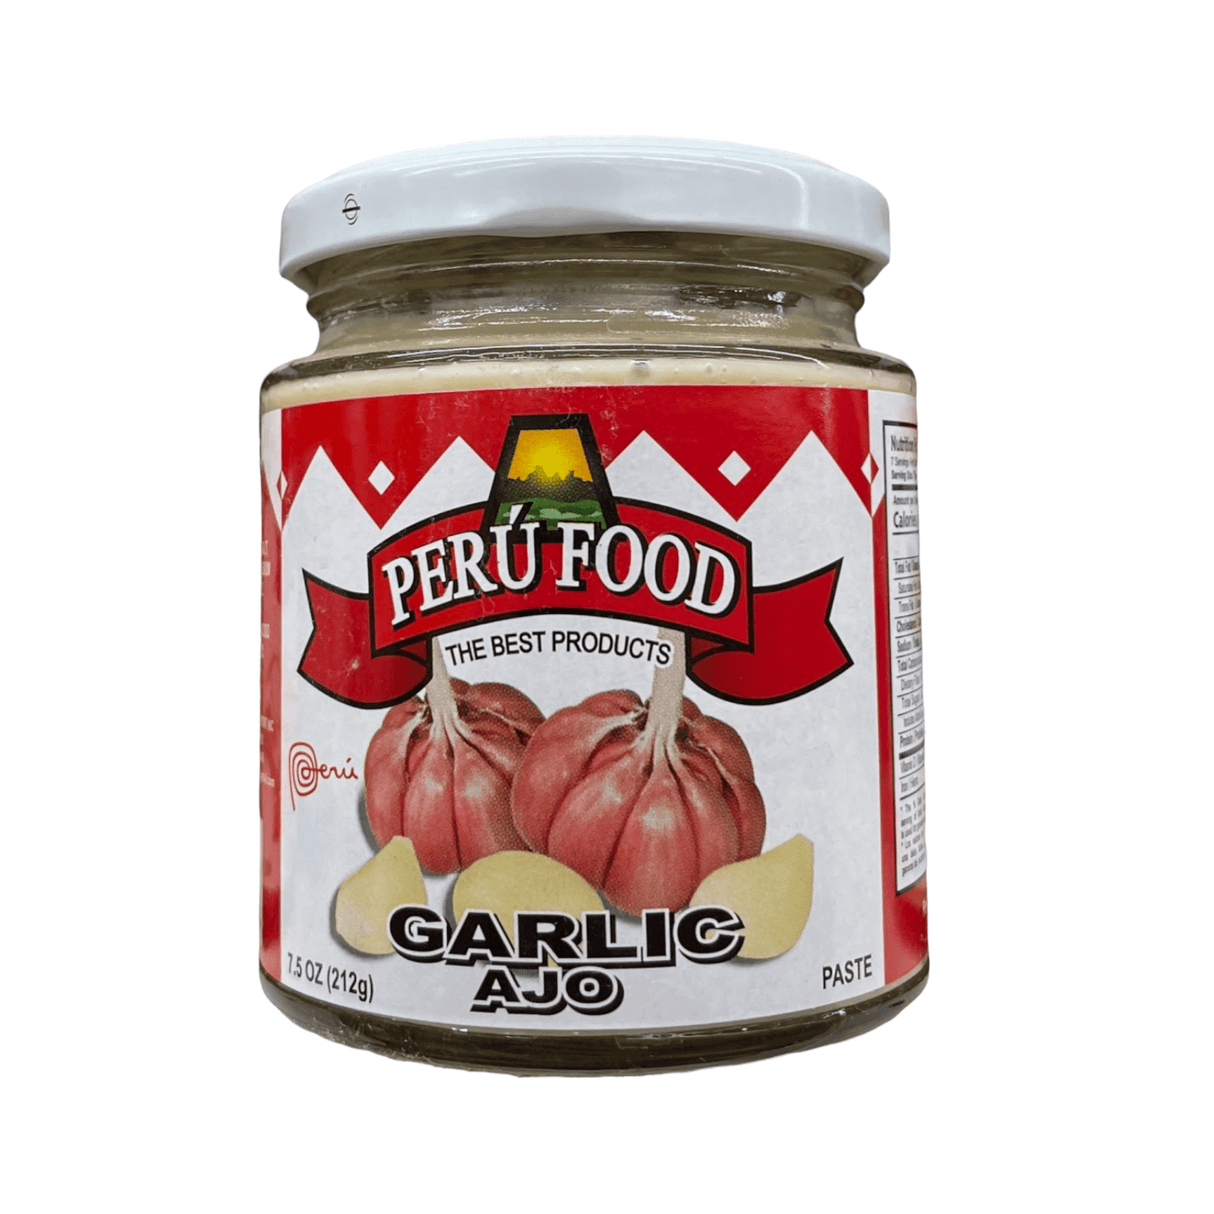 Peru Food Garlic (Ajo) Paste